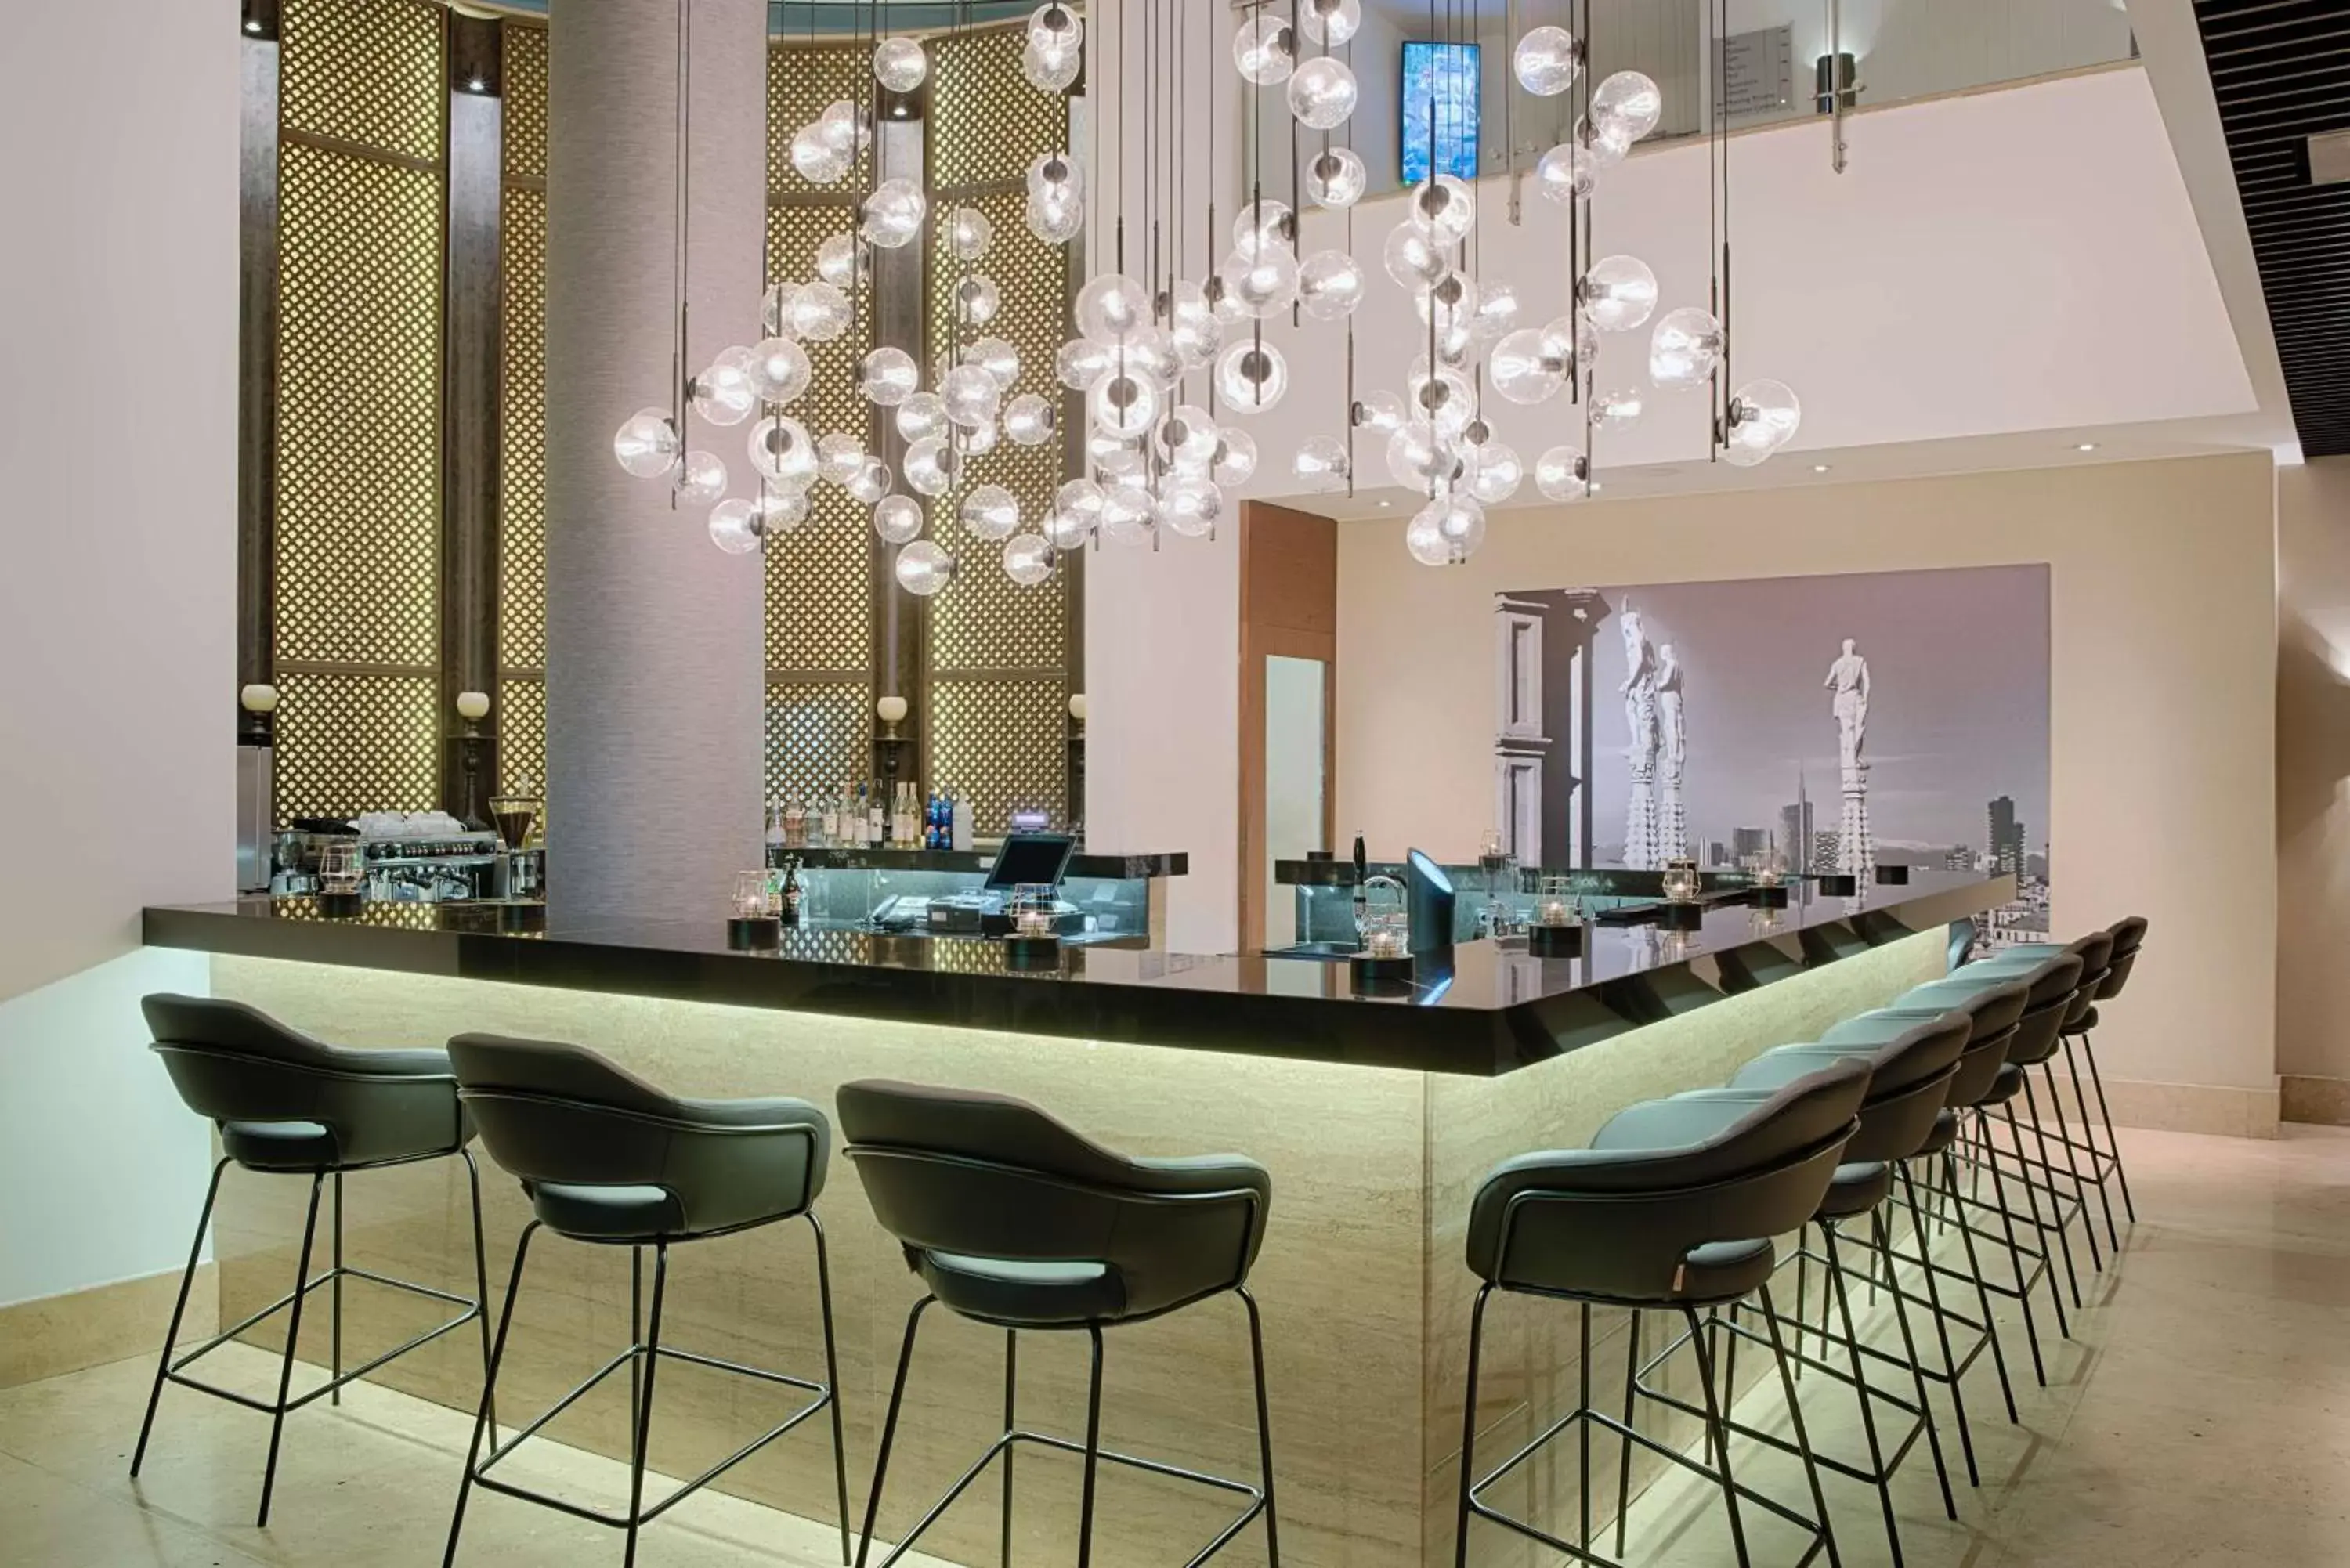 Lobby or reception in Radisson Blu Hotel Milan